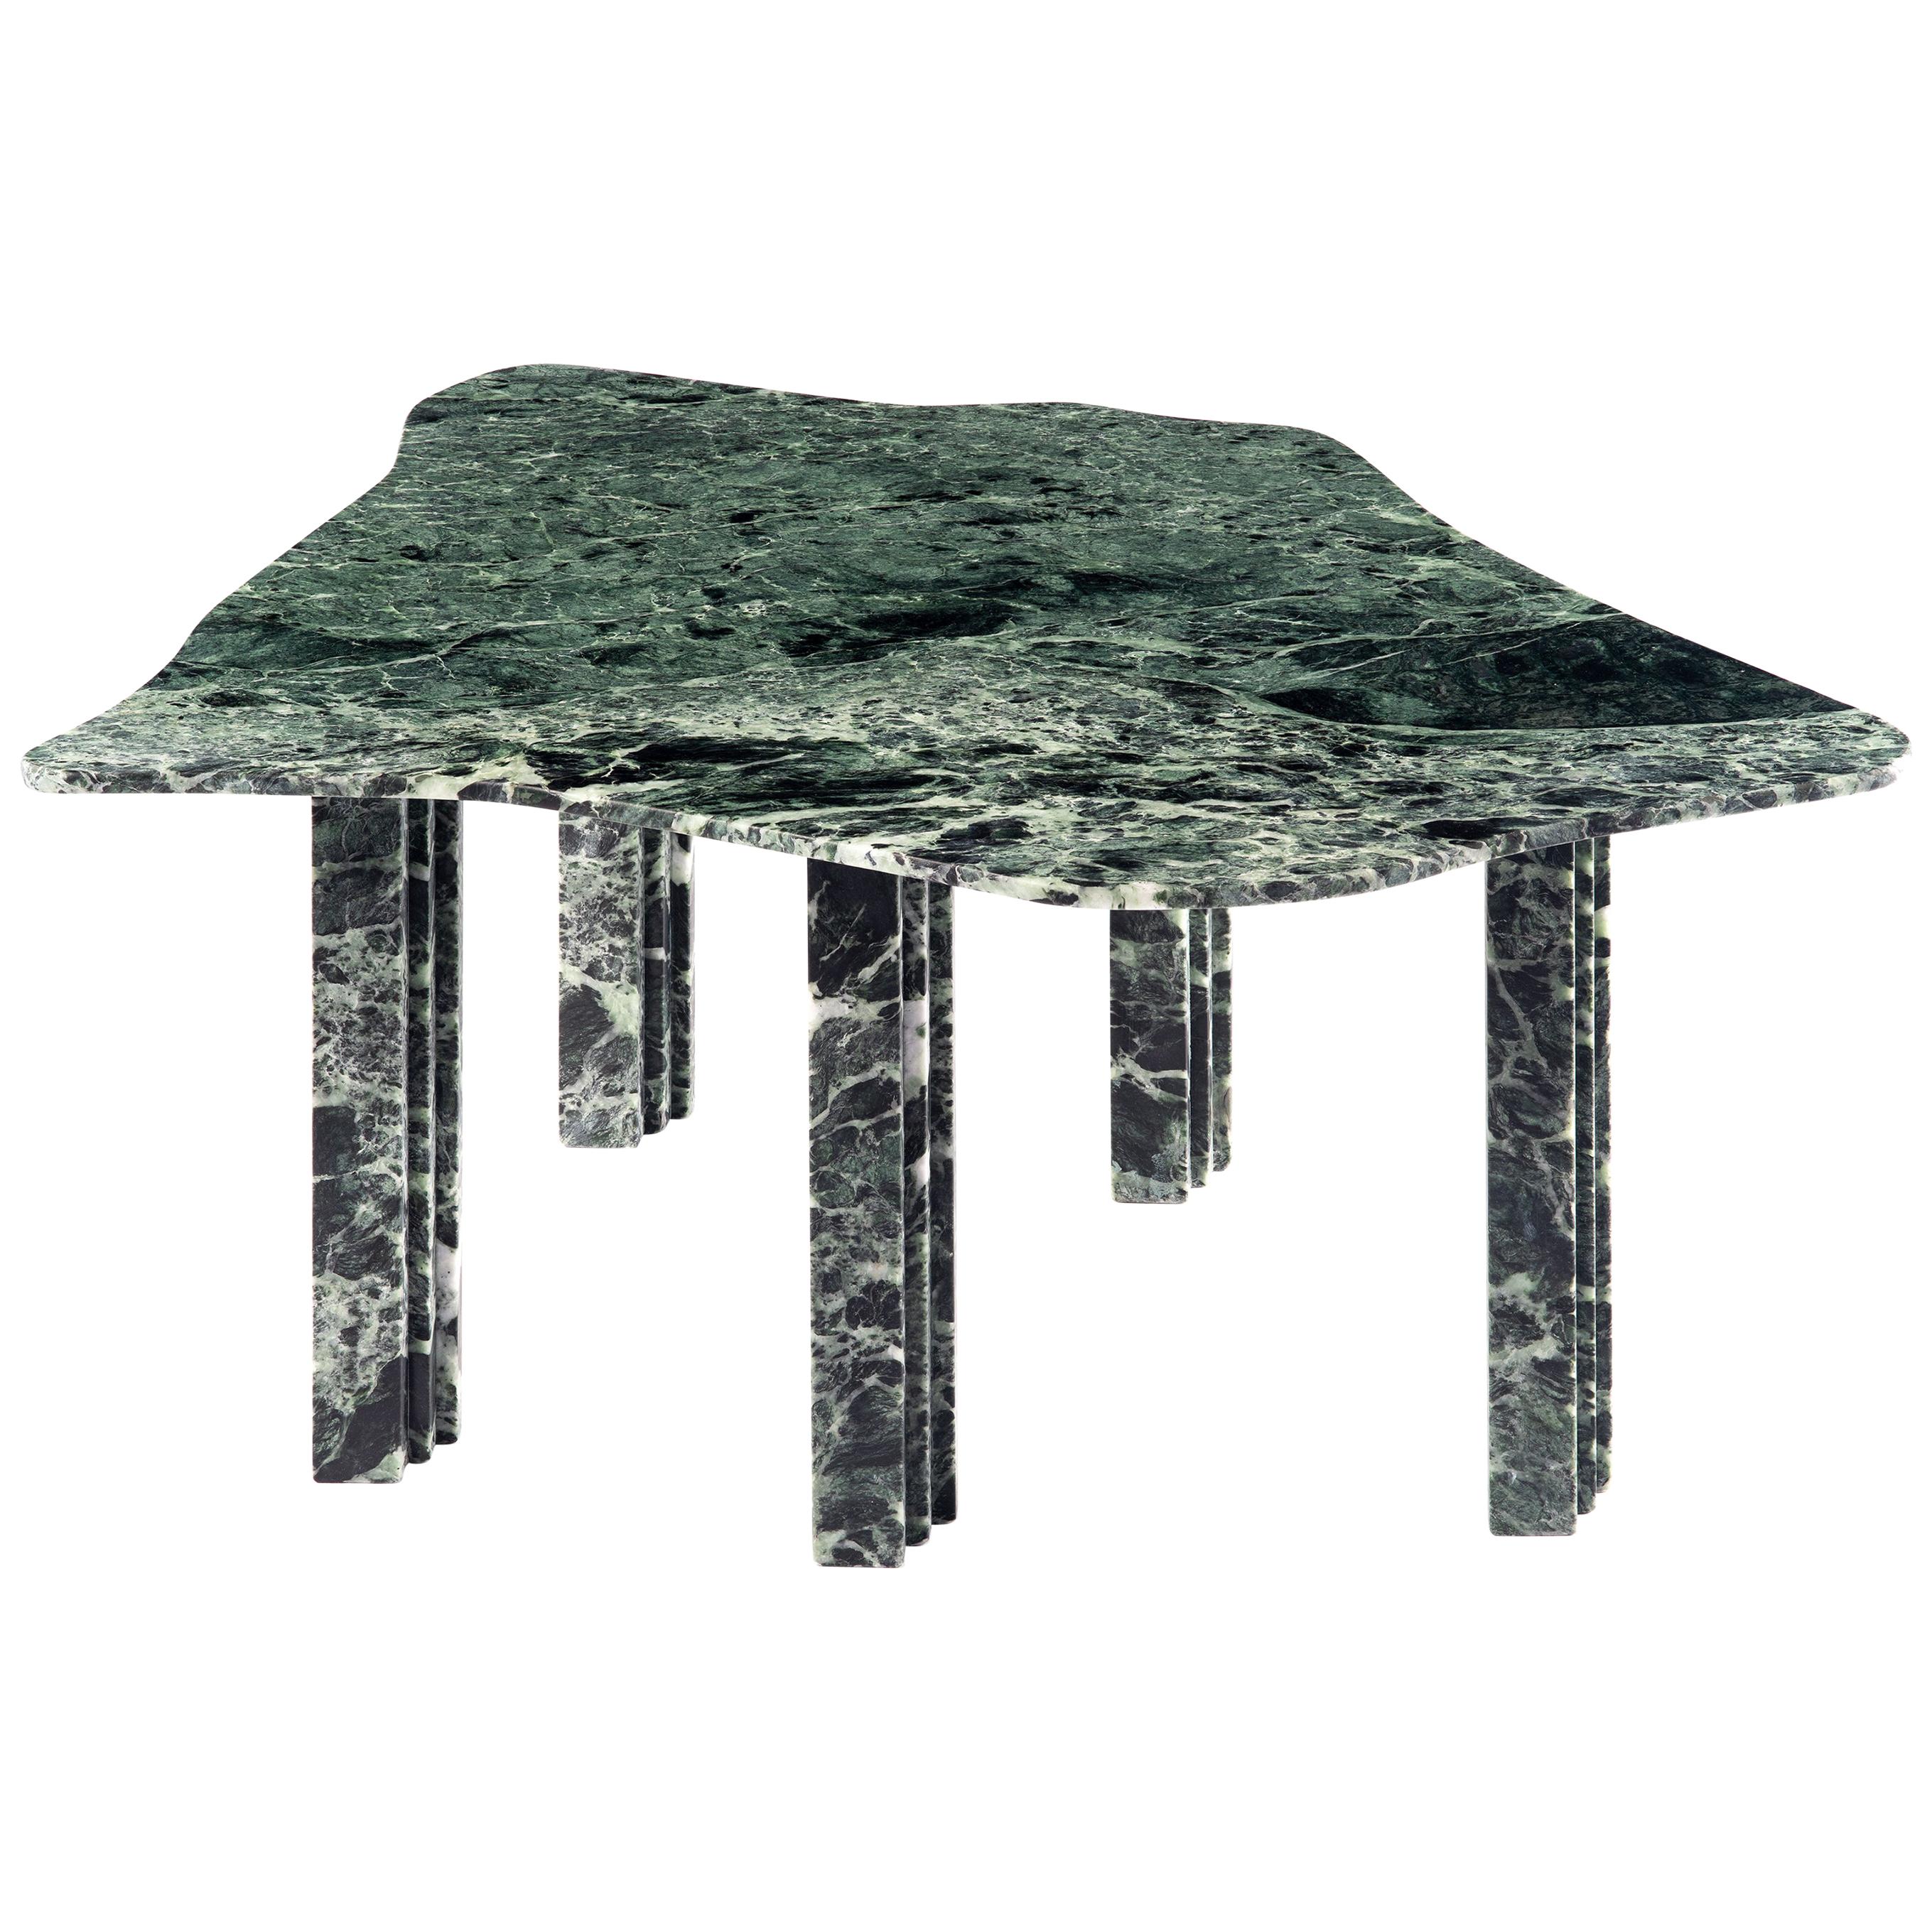 Sculptural Green Marble Table, Lorenzo Bini